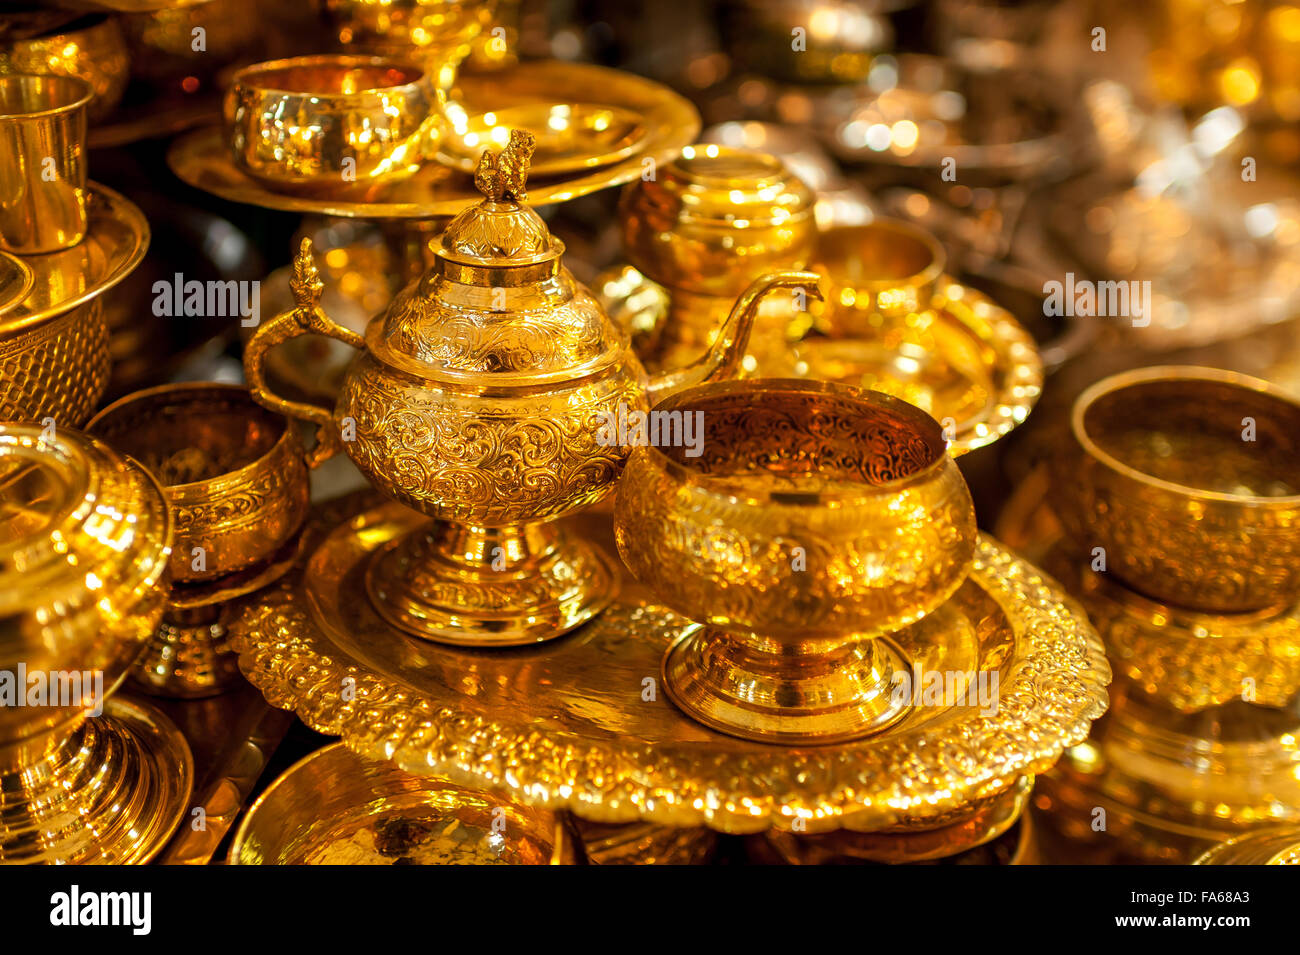 Gold merchandise, Yangon, Myanmar Stock Photo